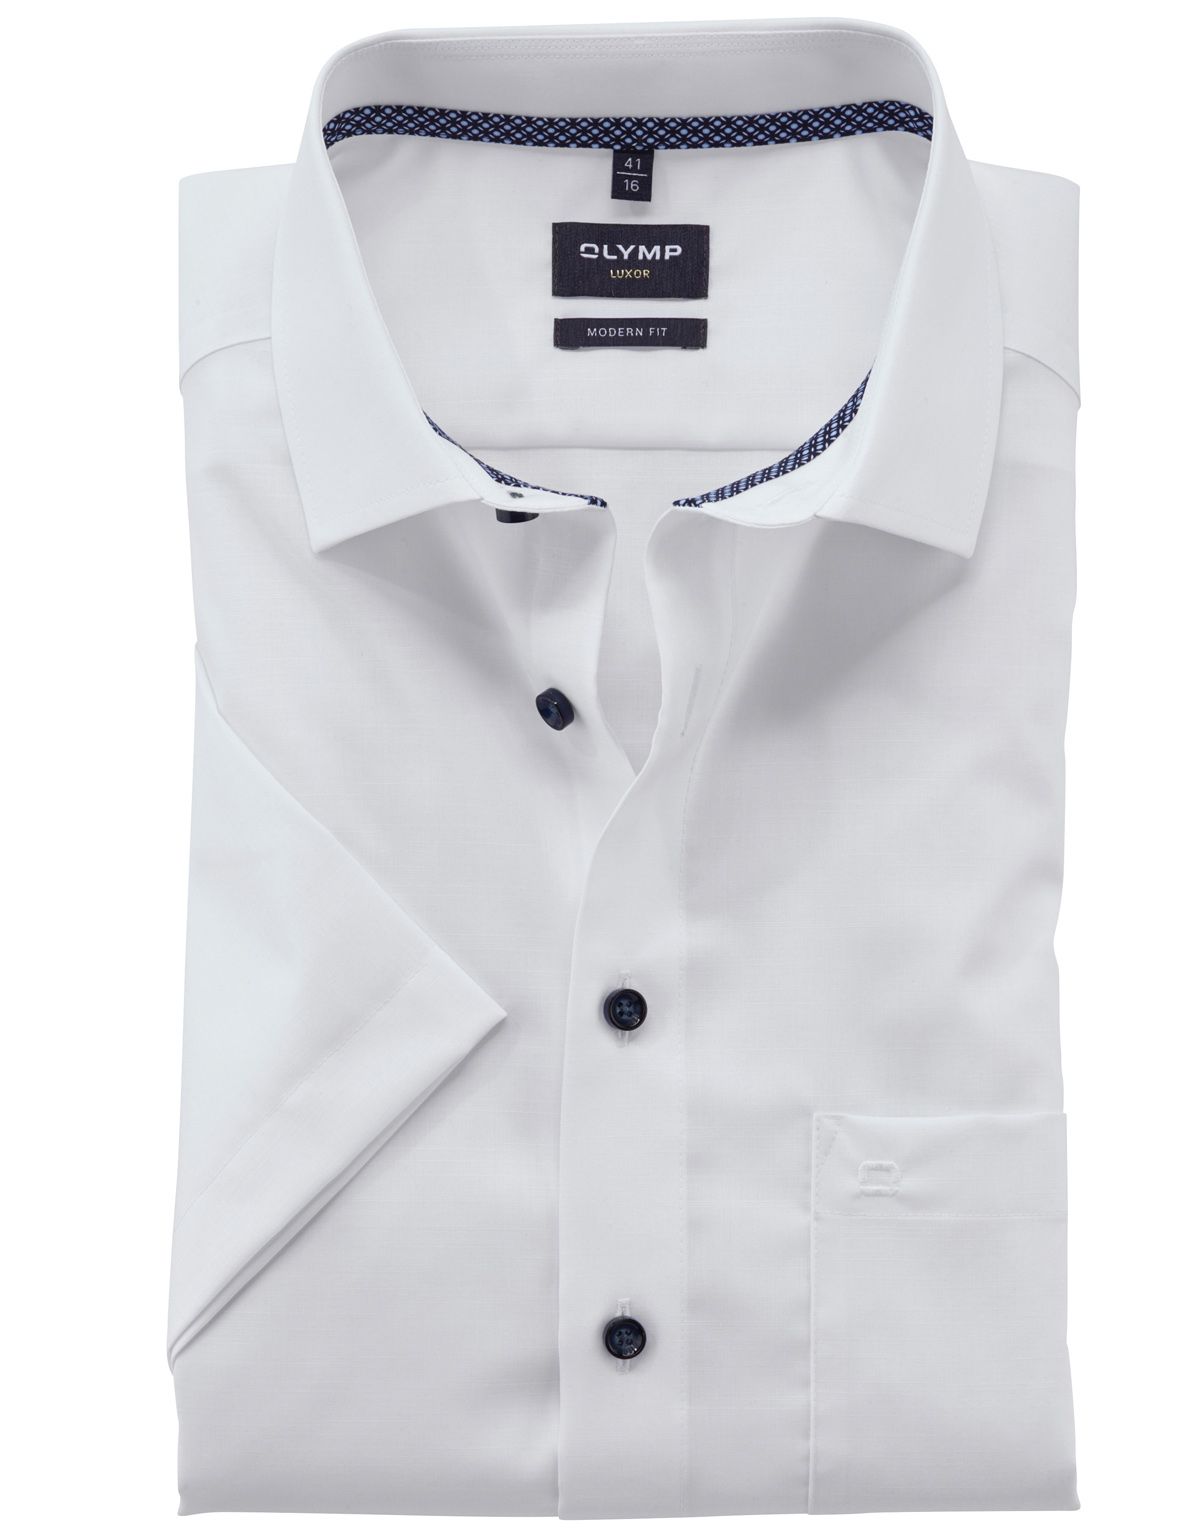 Рубашка классическая мужская OLYMP Luxor, modern fit[Белый]